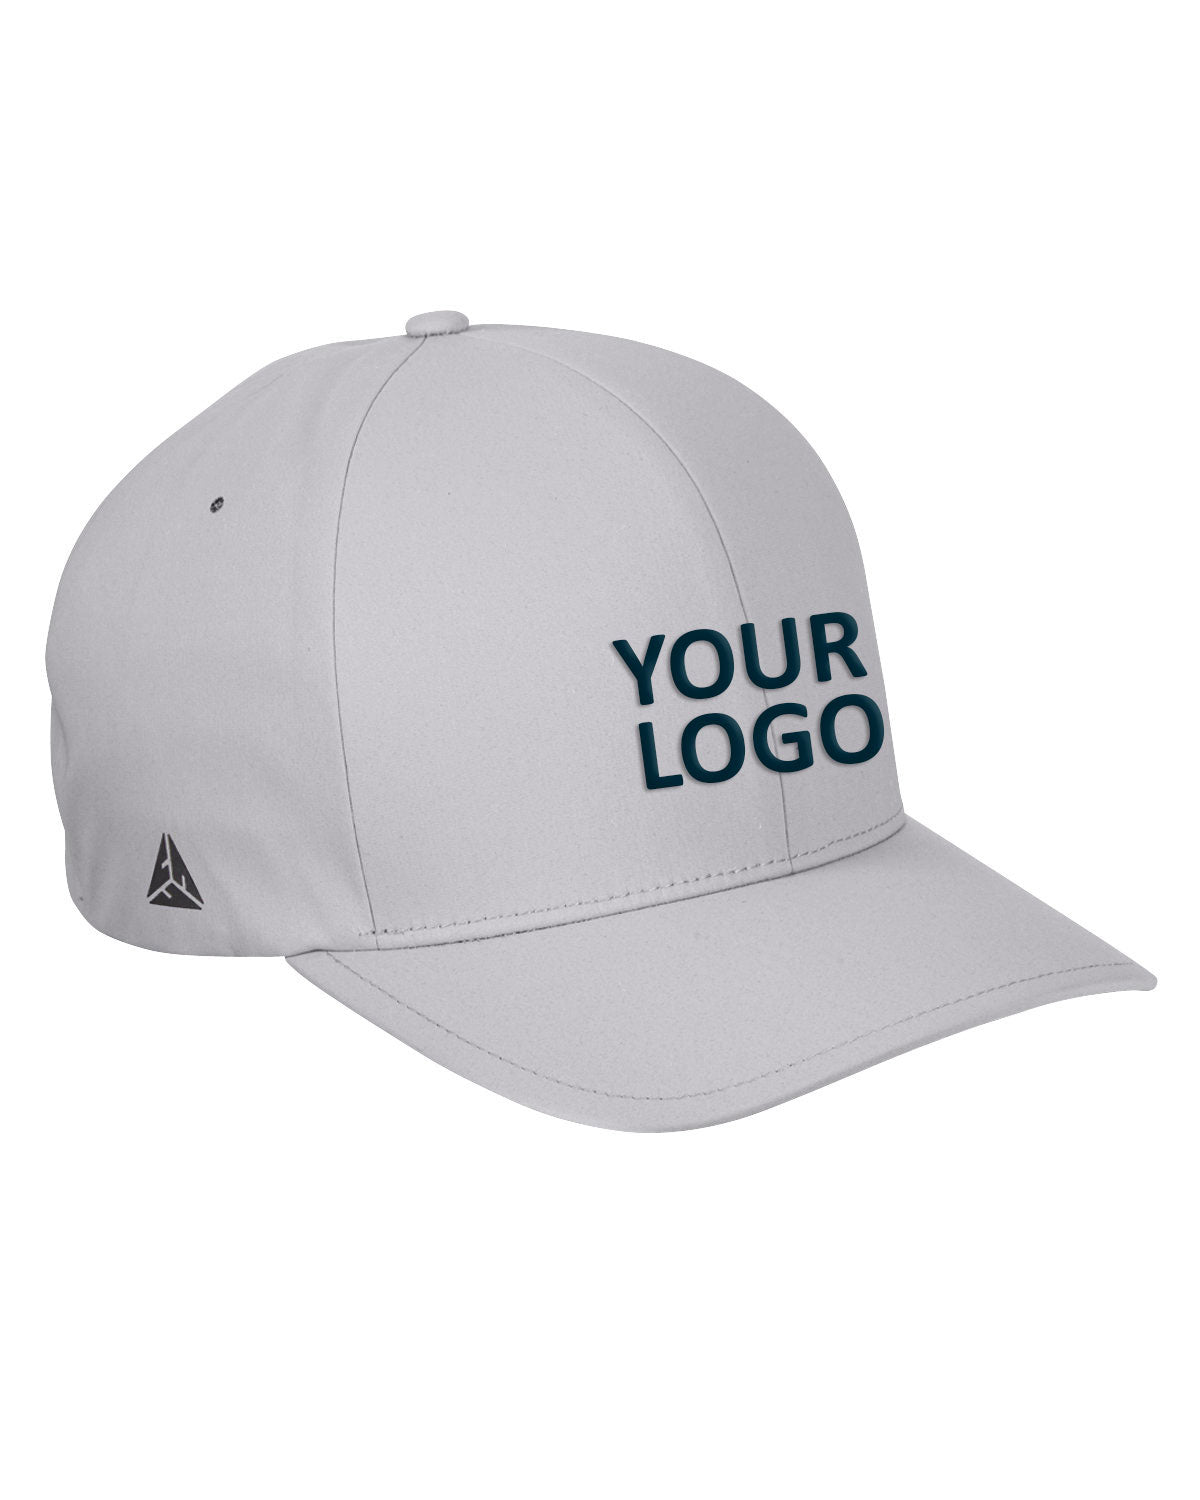 flexfit_yp180_silver_company_logo_headwear